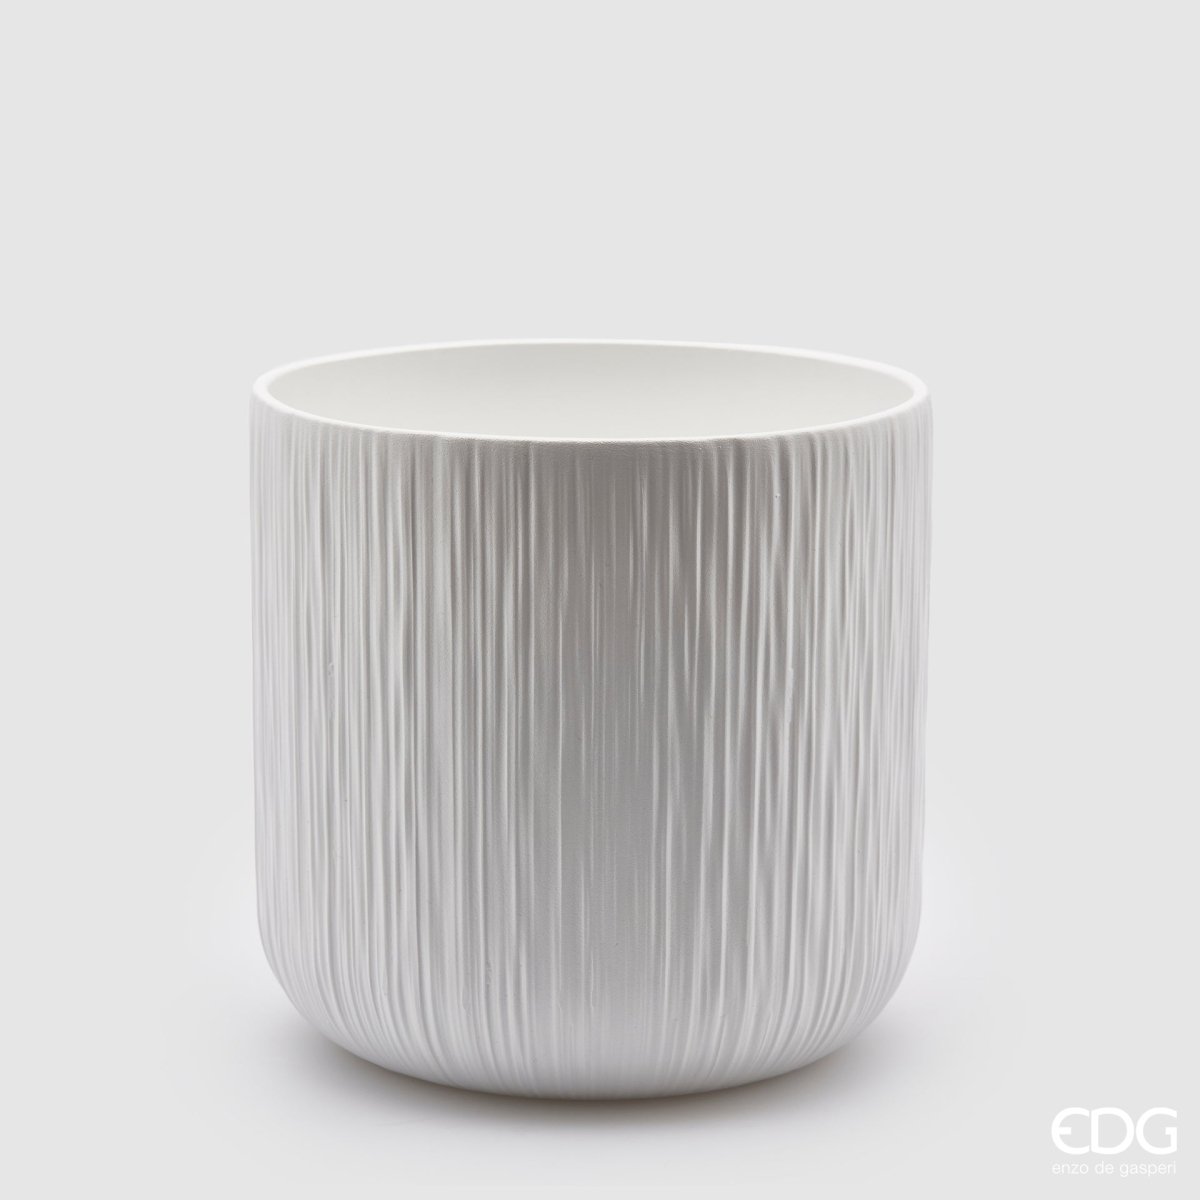 Edg - vaso in ceramica bianco rigato | rohome - Rohome